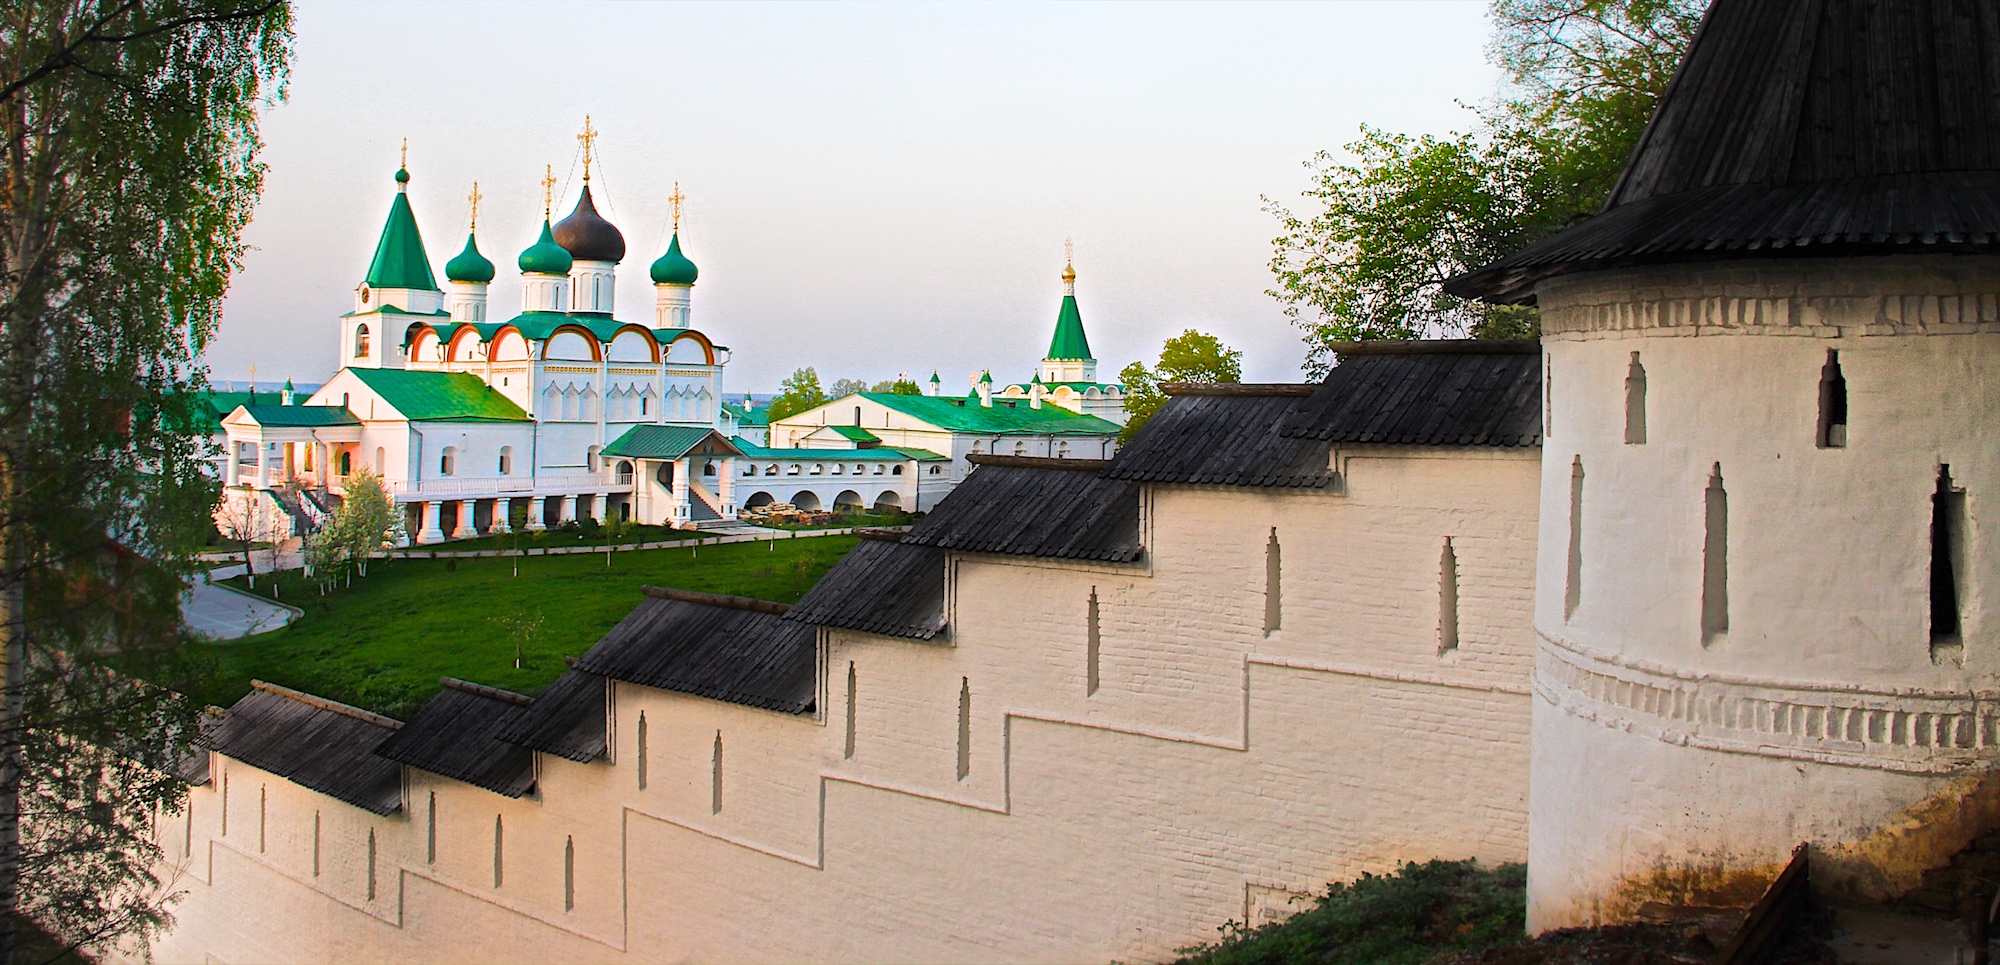 Вознесенский Печерский мужской монастырь Нажмите на изображение, чтобы посмотреть его на полном экране.